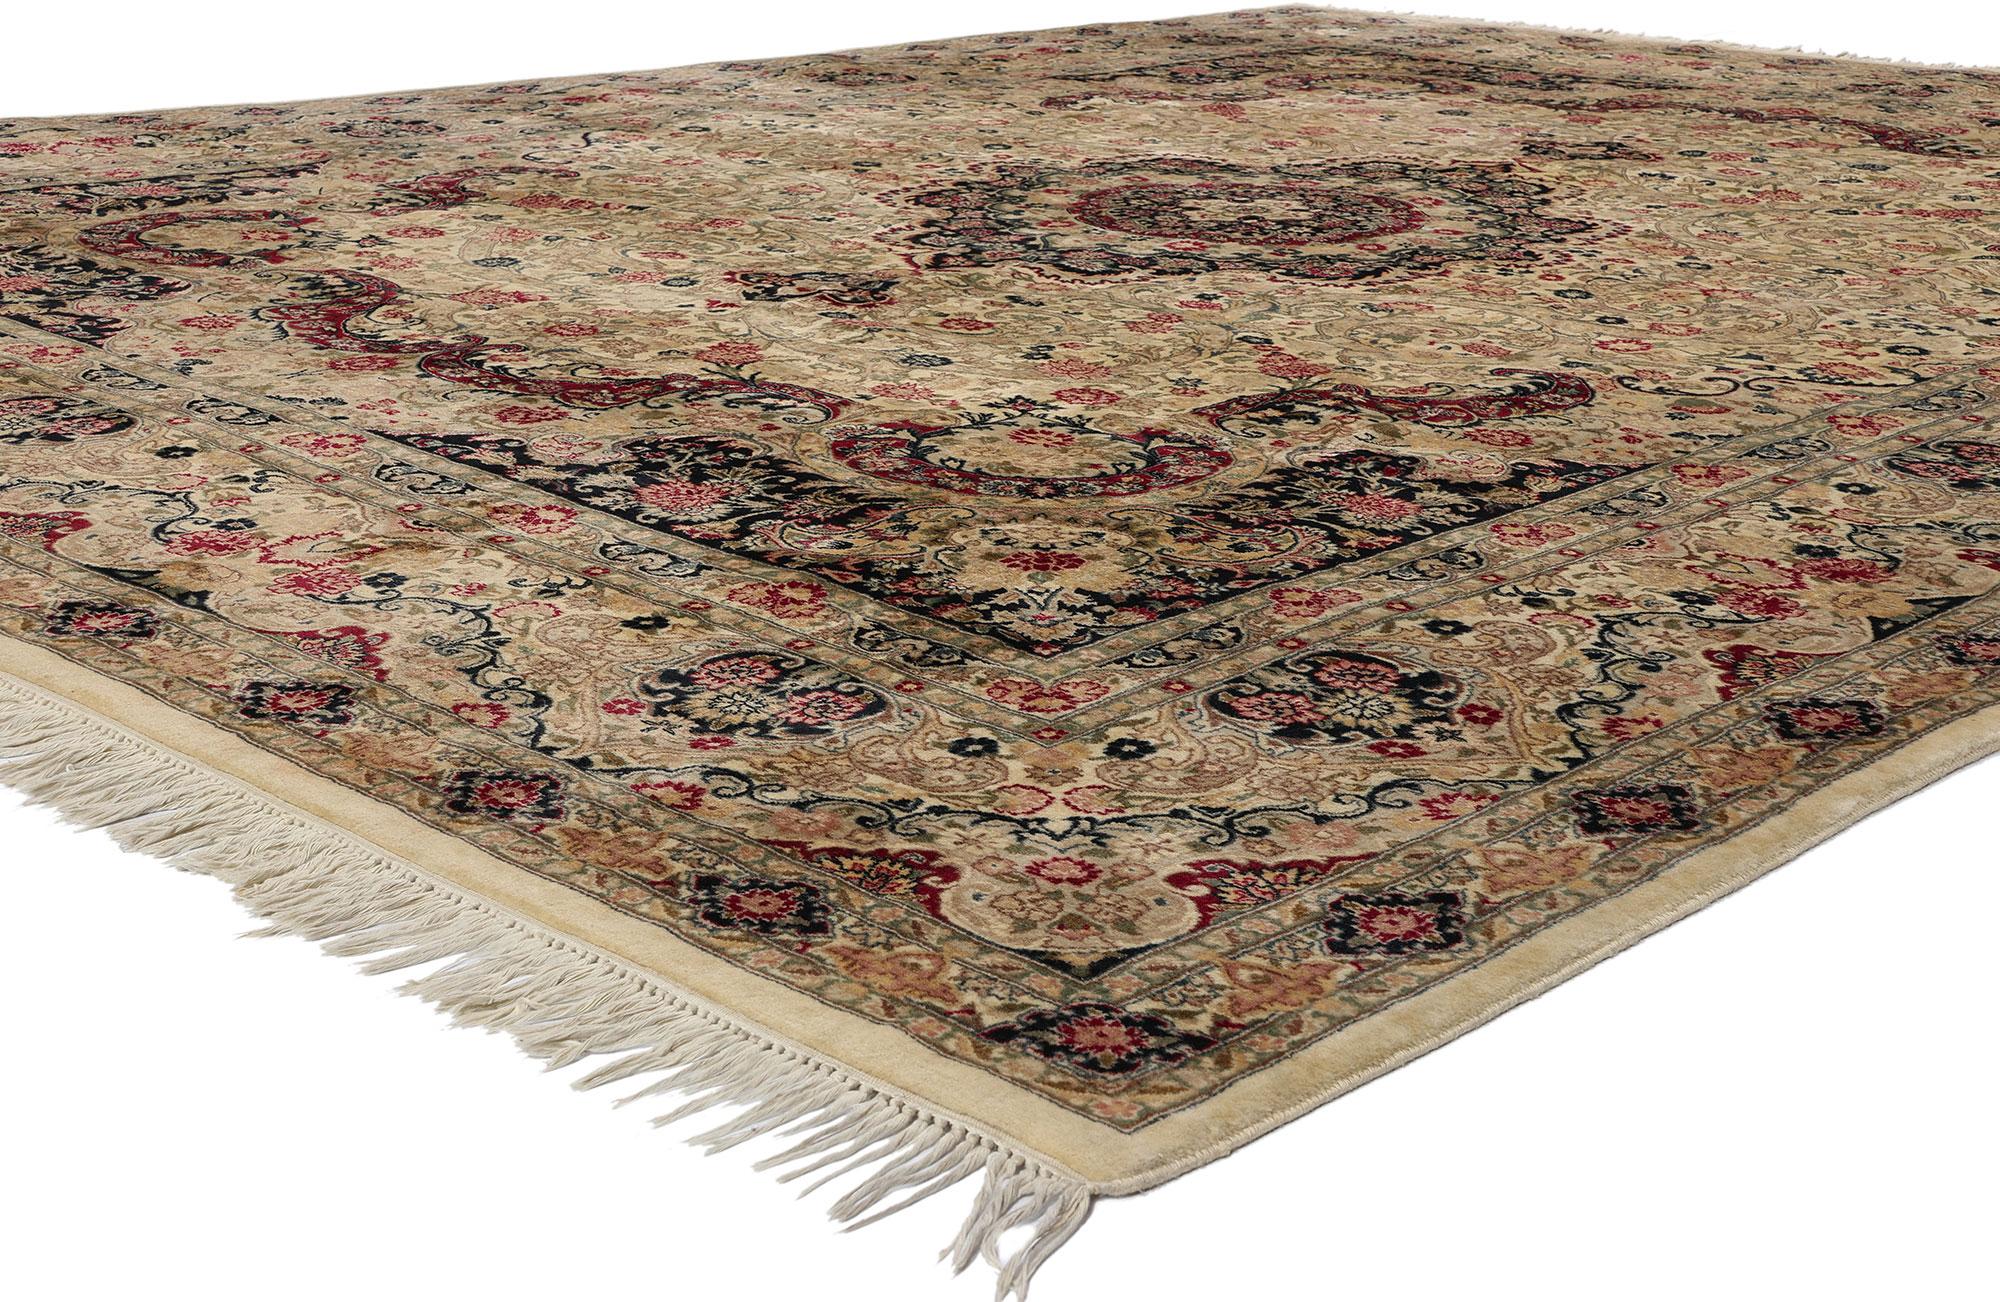 78688 Tapis vintage français de style Savonnerie, 09'02 x 12'00. Ce tapis de style Savonnerie pakistanais vintage en laine nouée à la main témoigne de la fusion des traditions artistiques. En son cœur, un médaillon floral cuspidé, orné d'un délicat